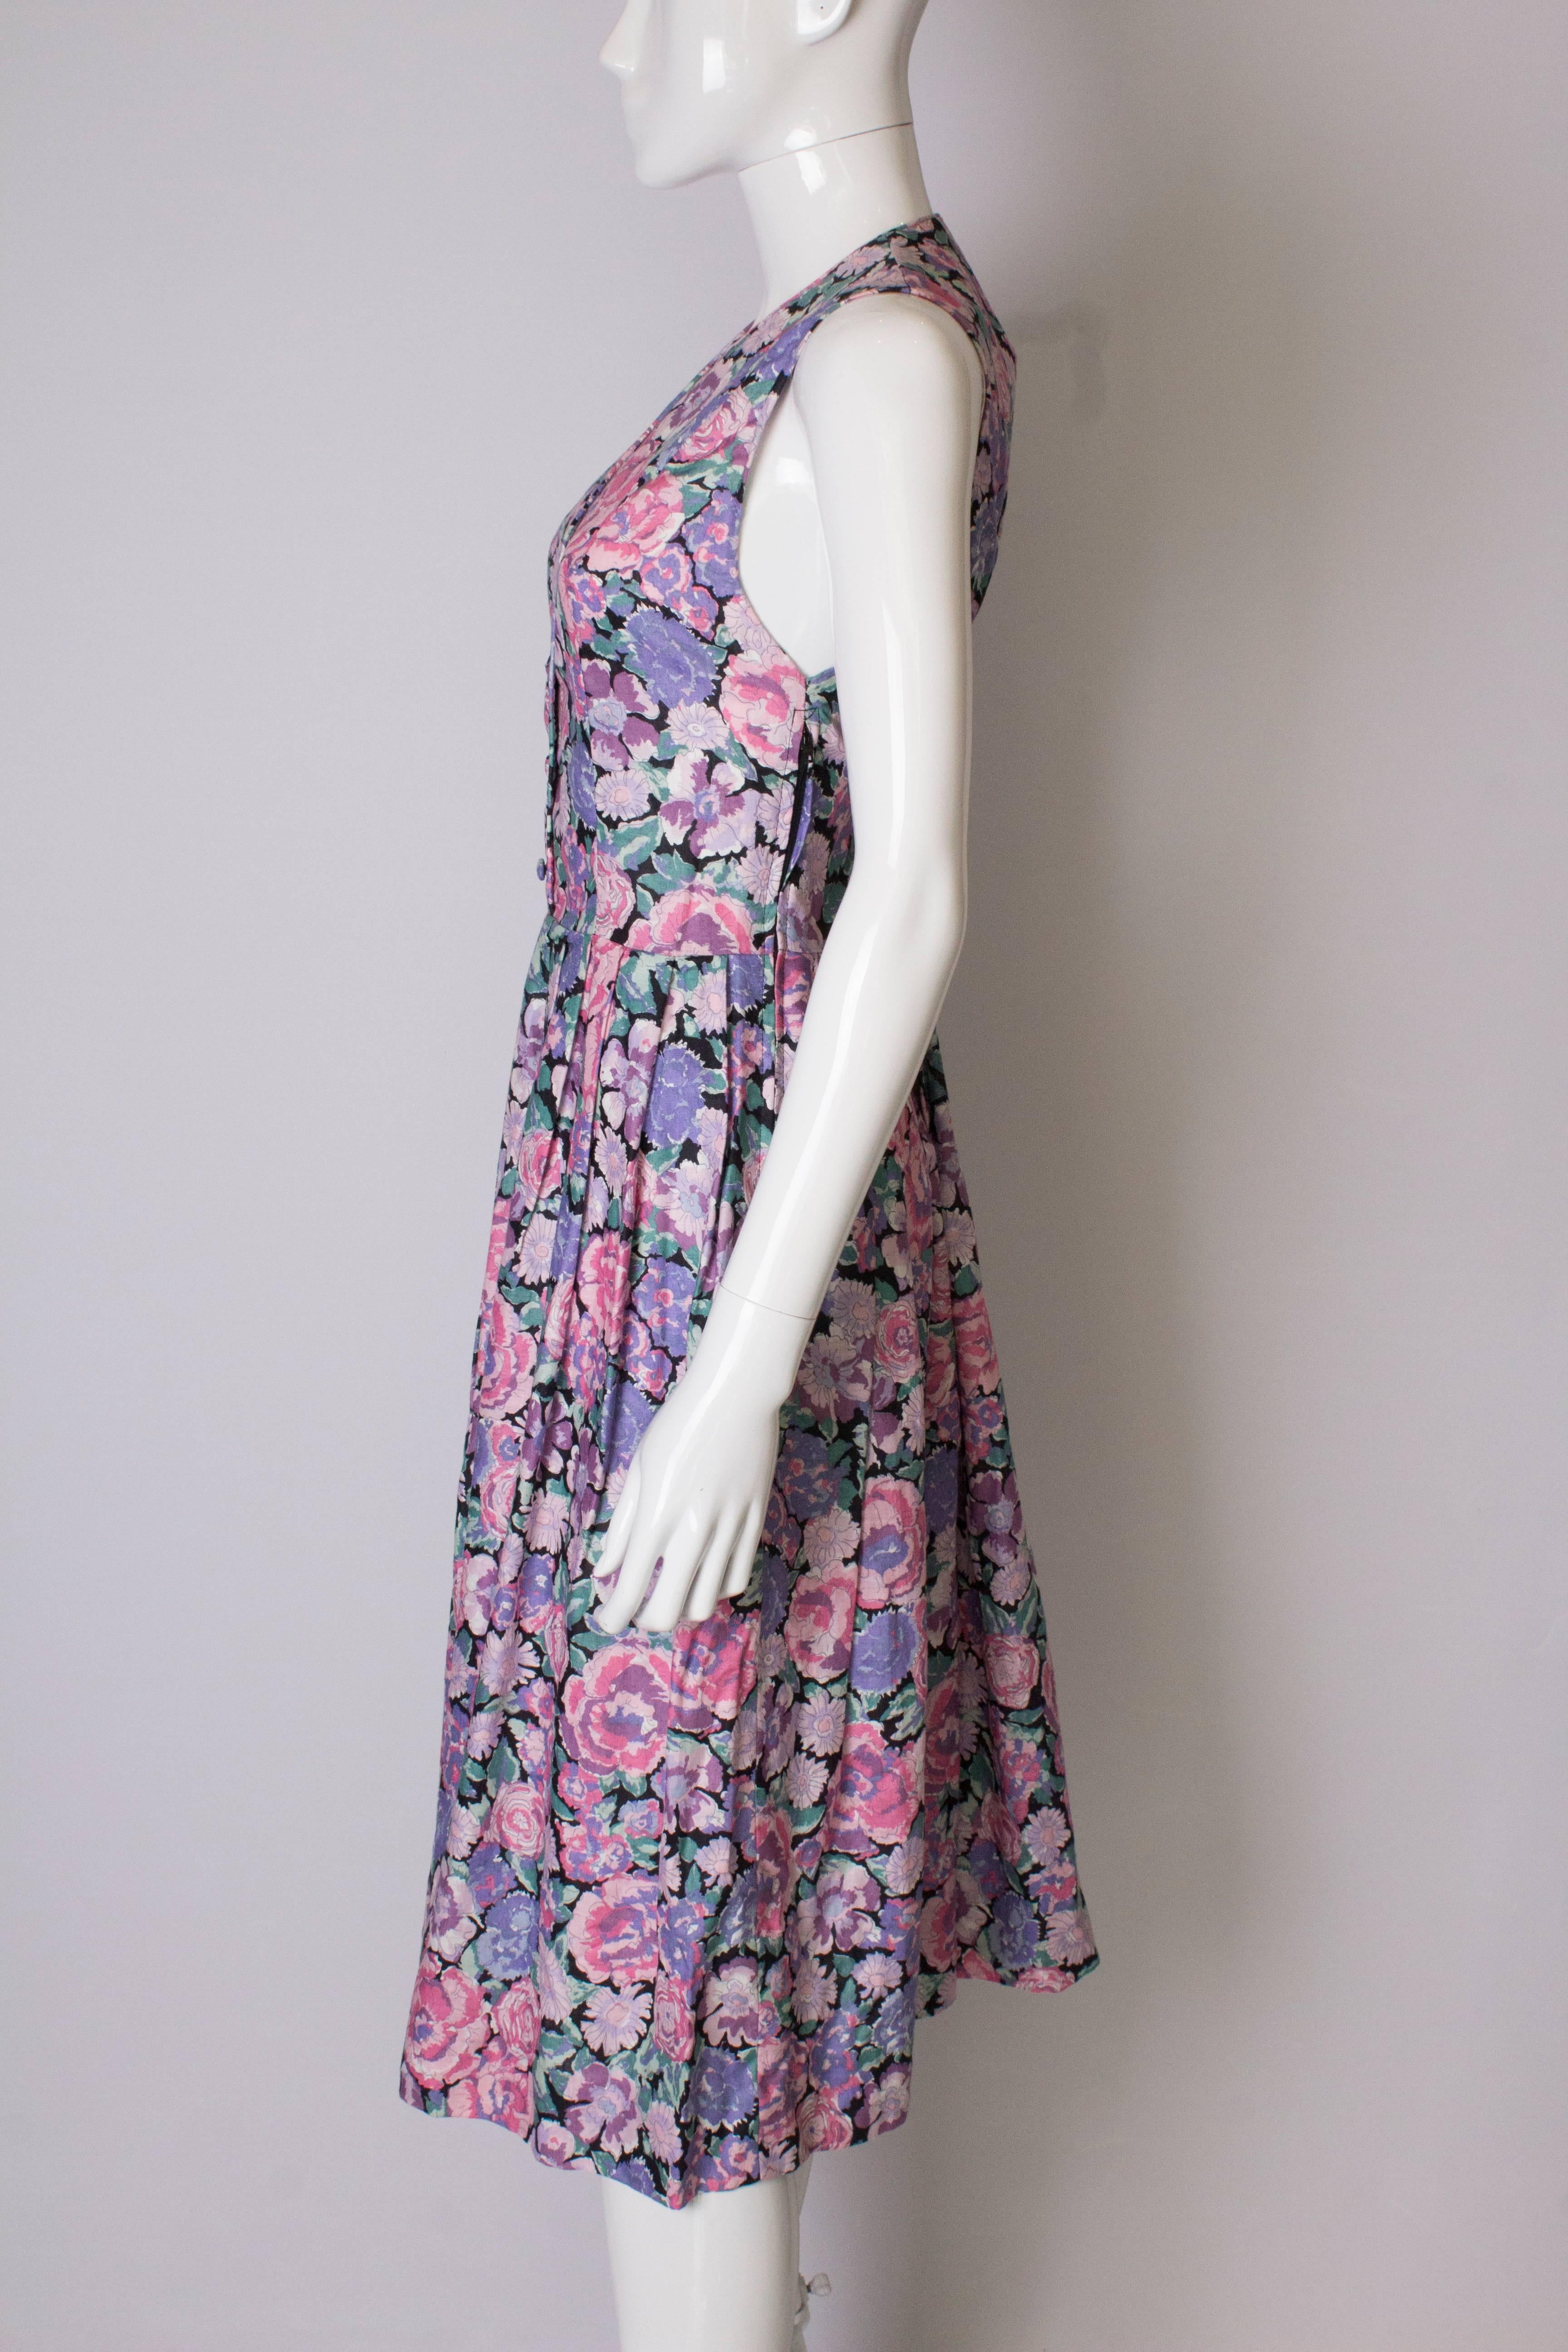 Women's Vintage Laura Ashley Floral Dress